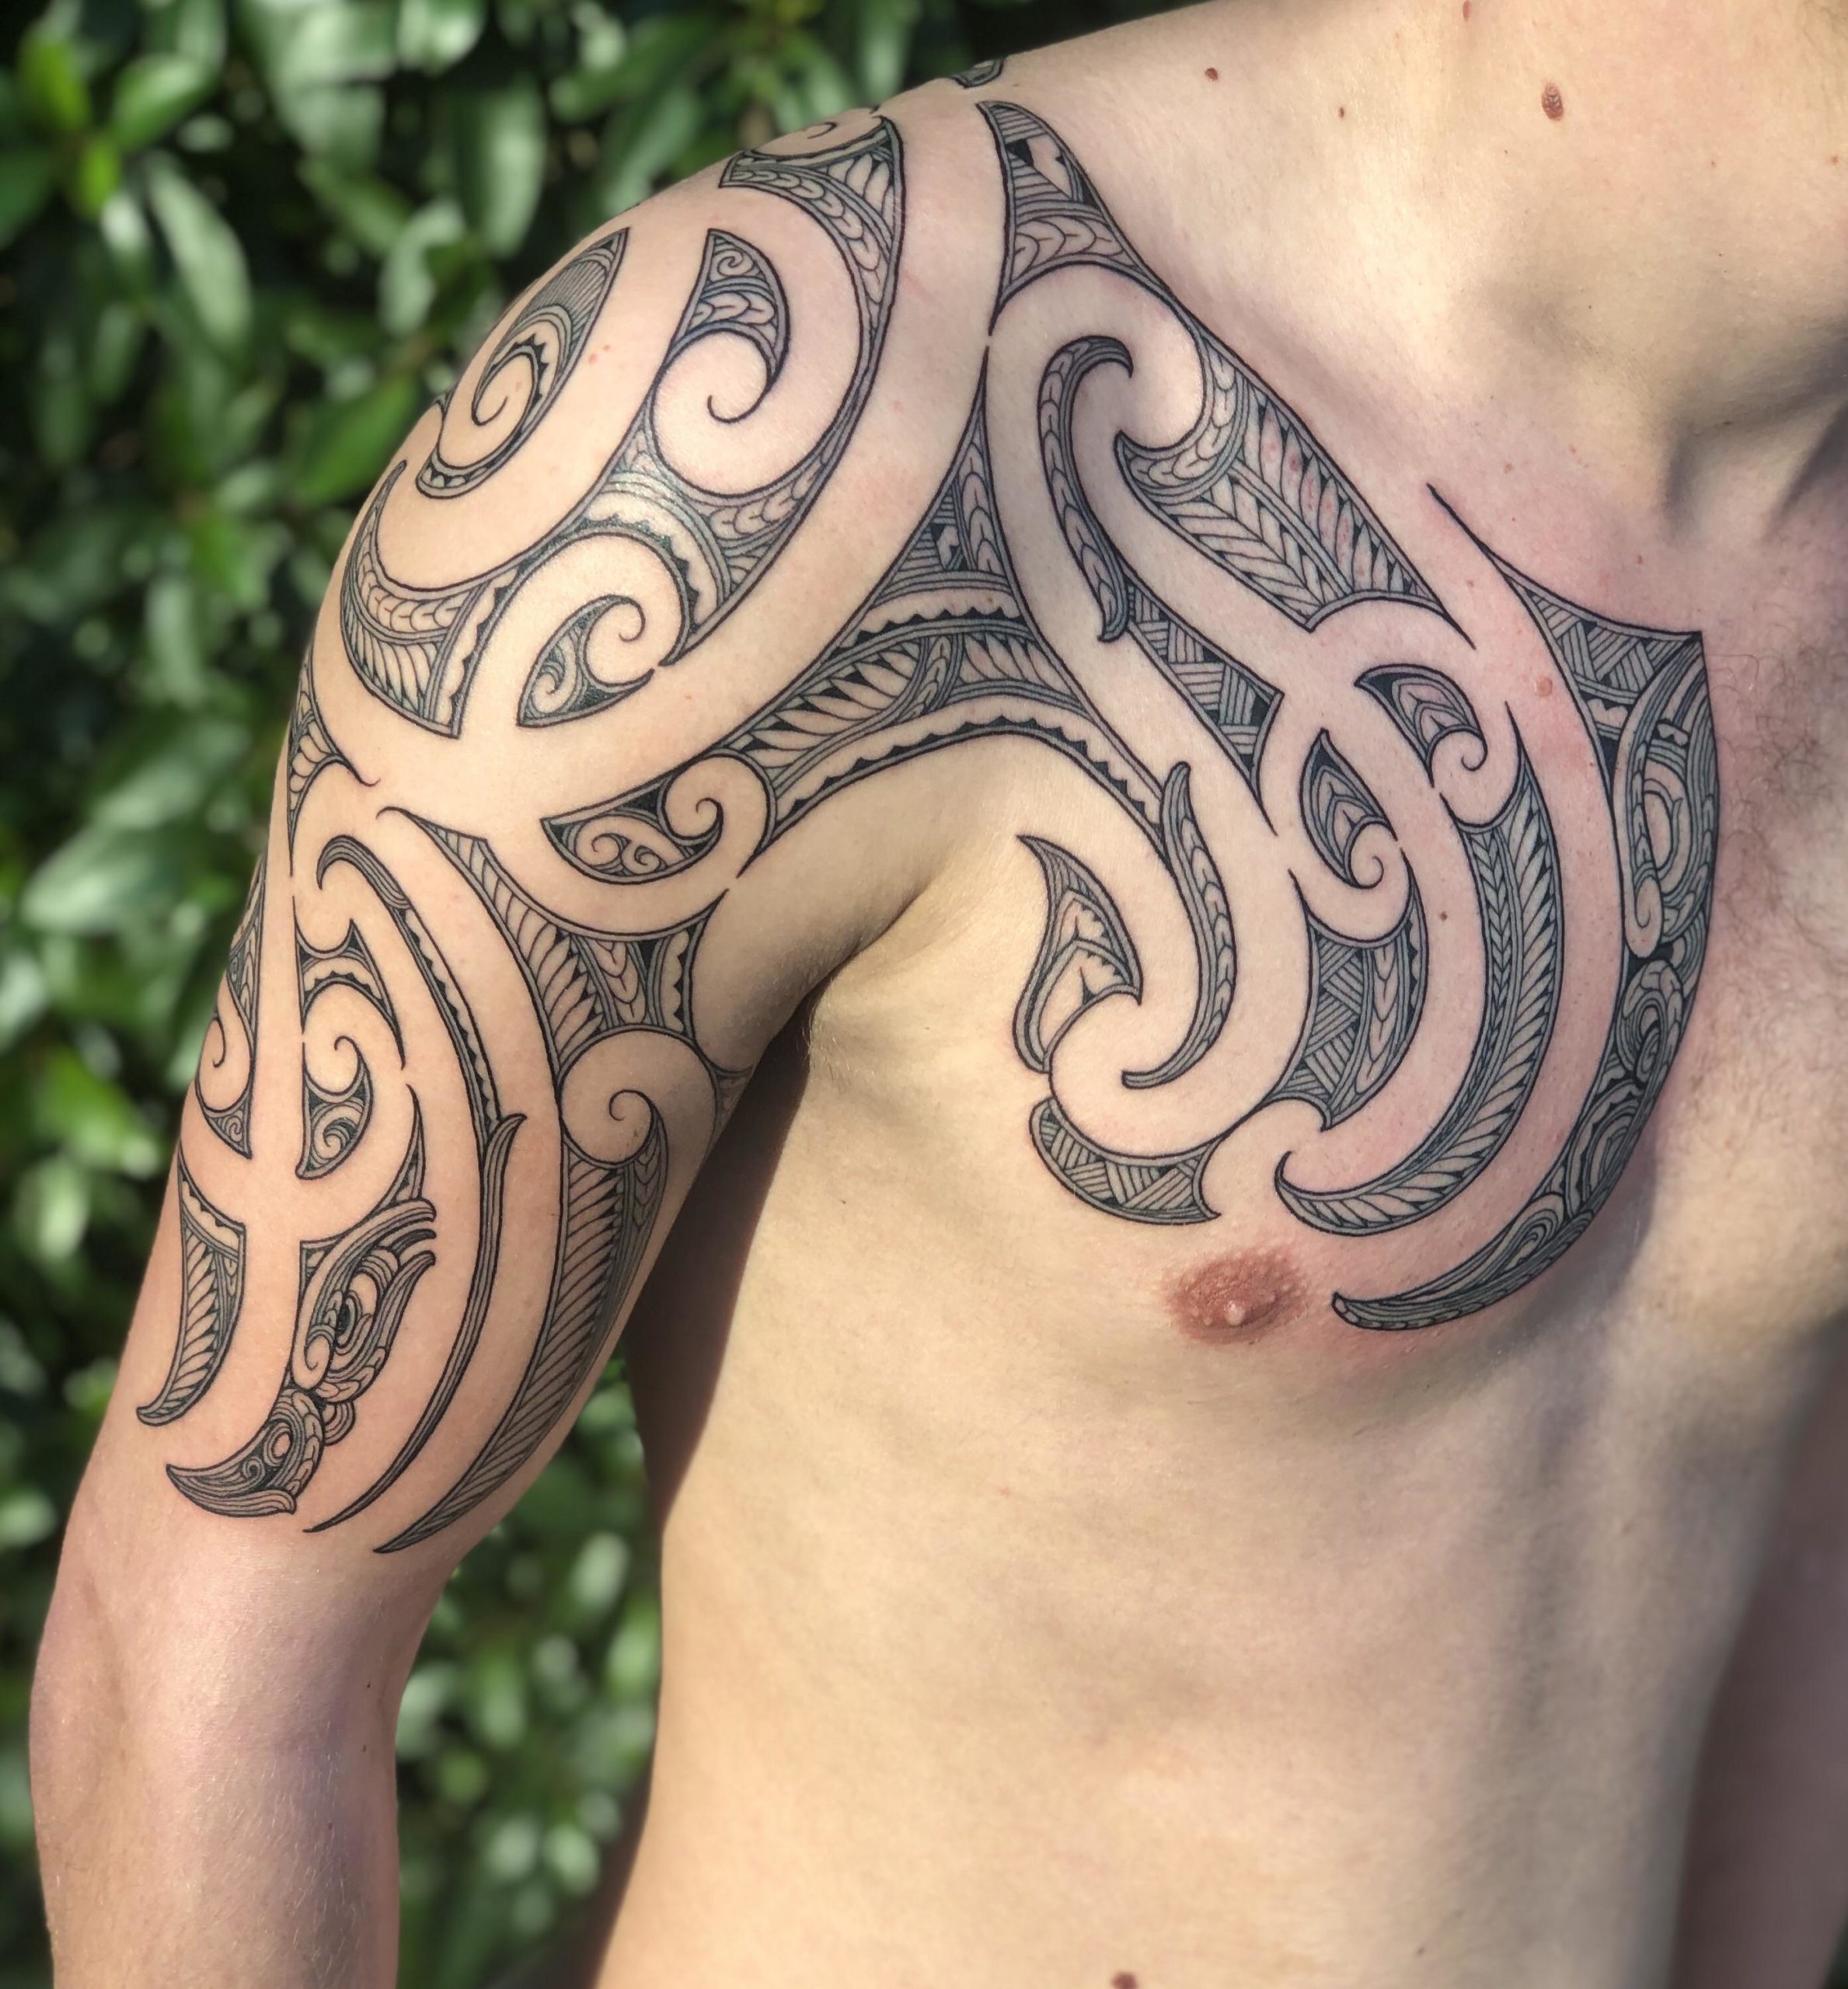 Tổng hợp các mẫu hình xăm Maori cực kì bí ẩn - [Kích thước hình ảnh: 2378x2560 px]